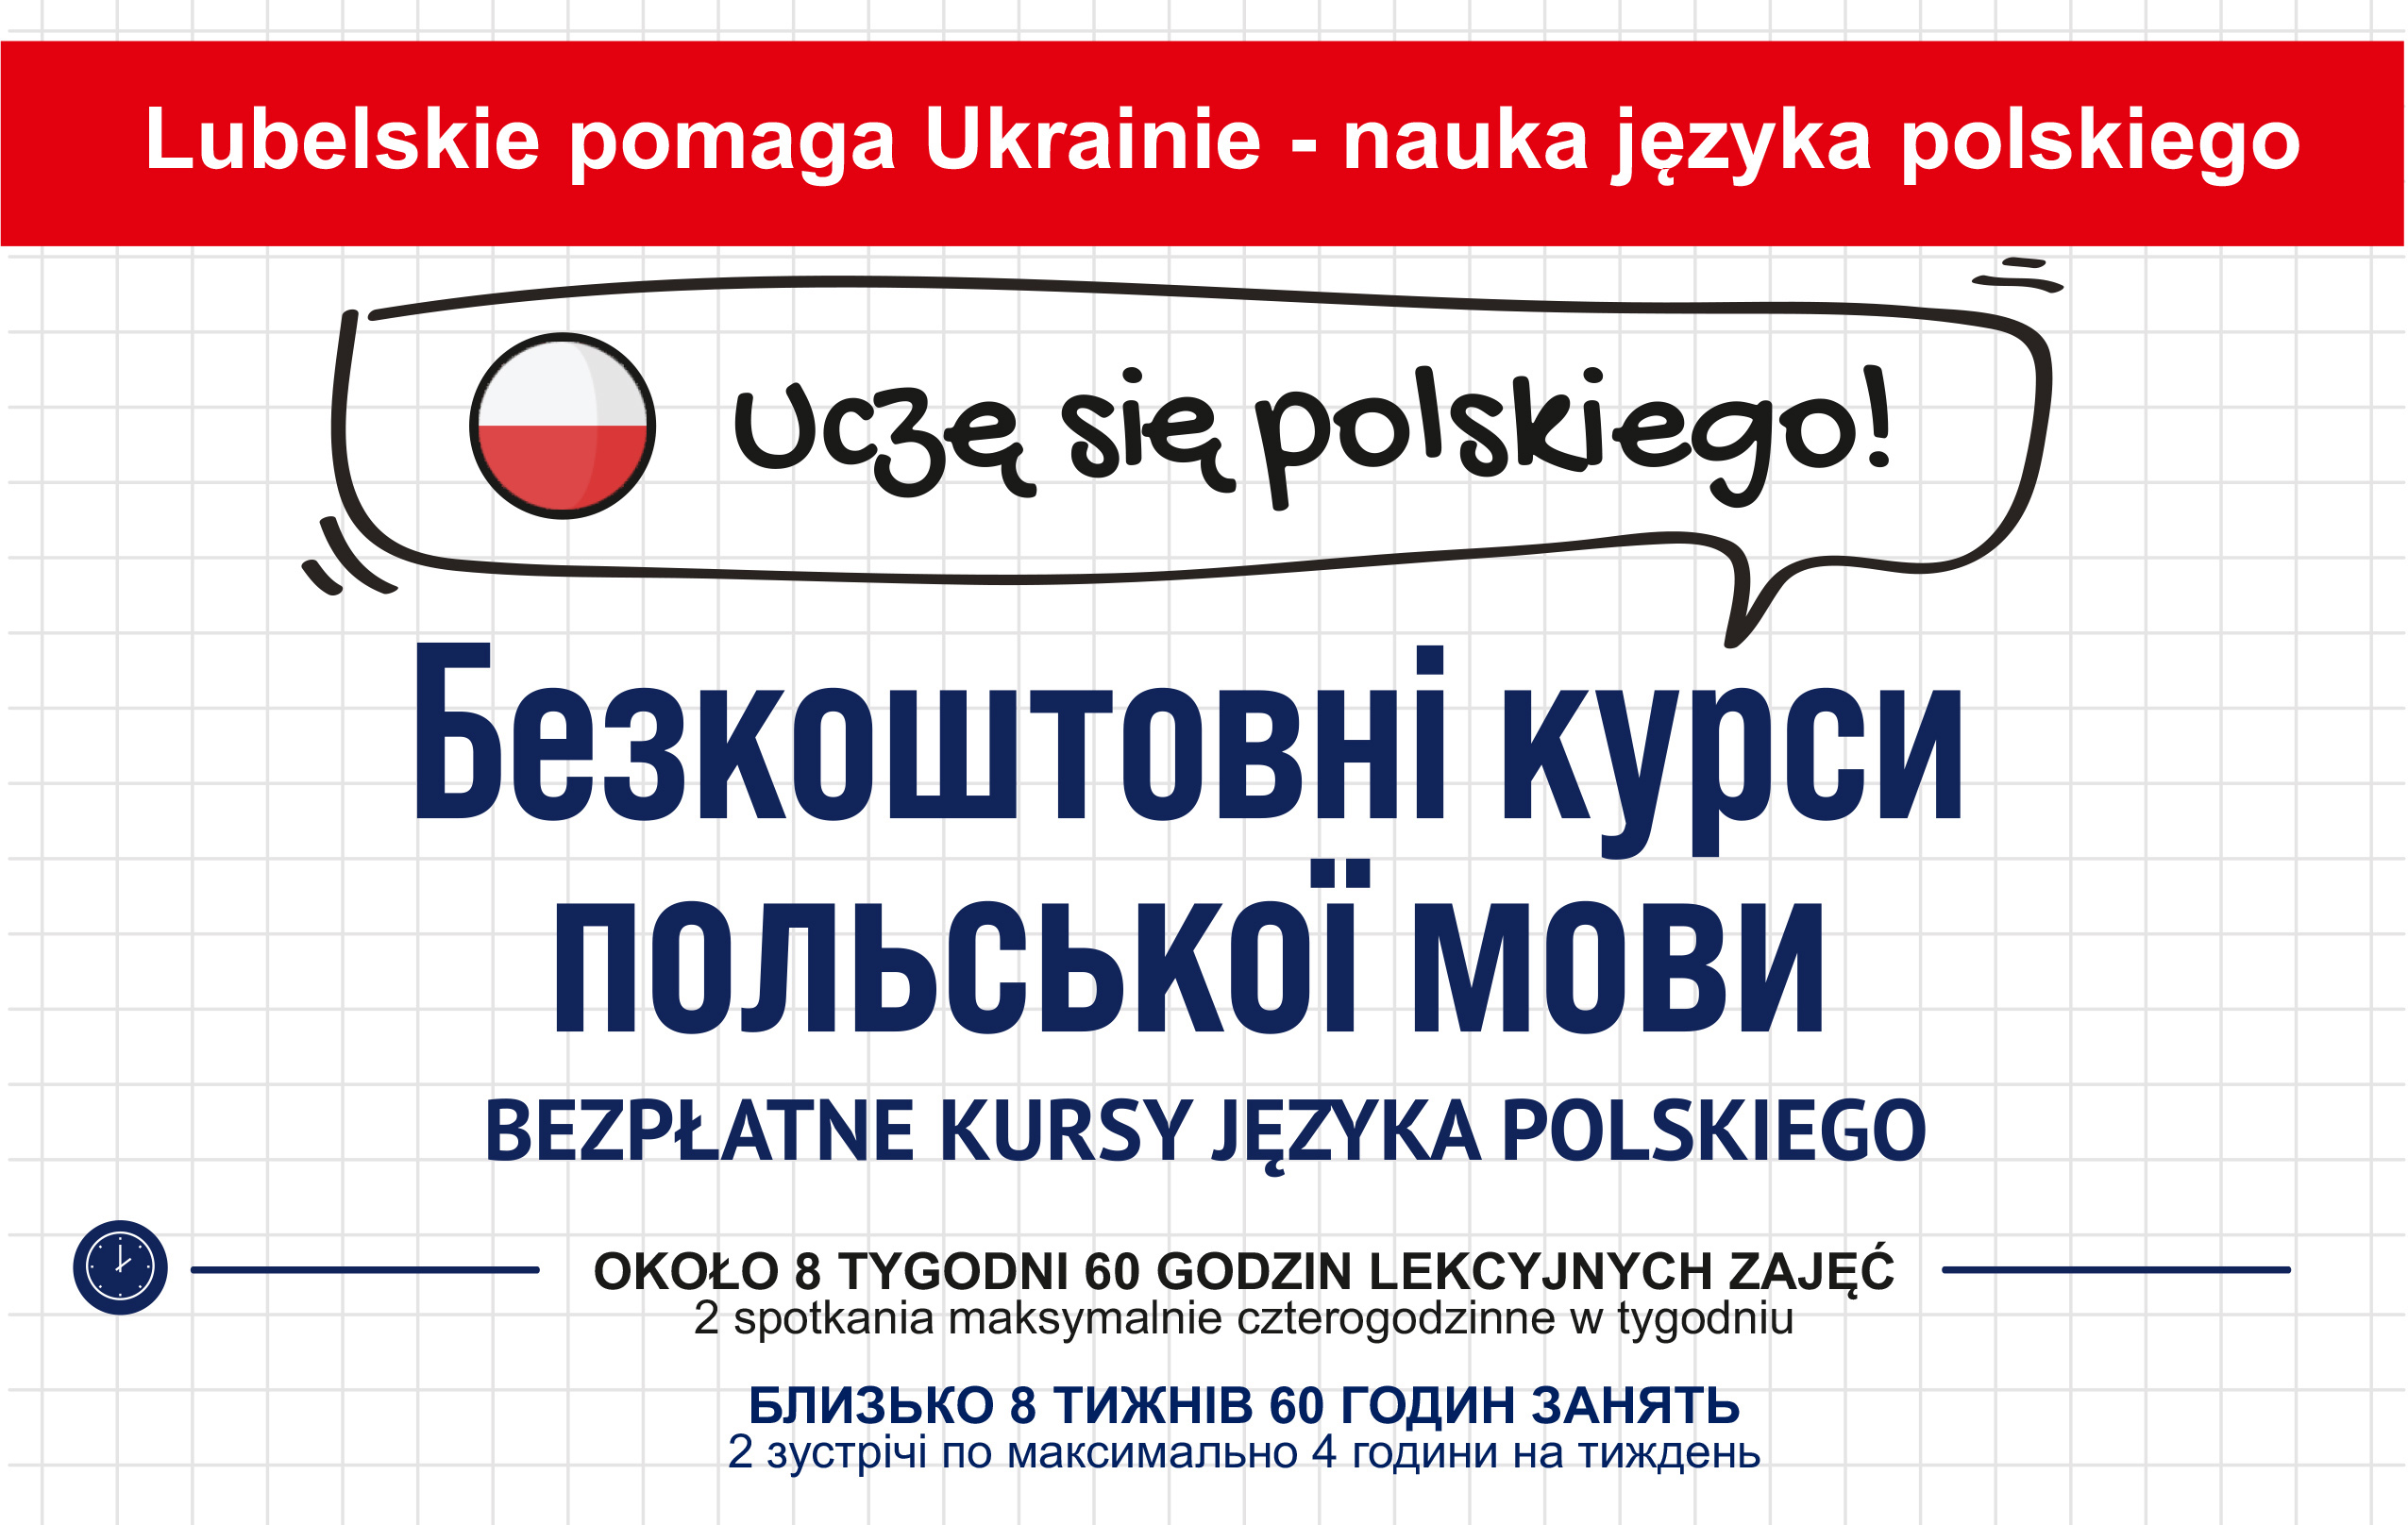 Na tle imitującym kartkę z zeszytu w kratkę, w dymku, odręczny napis UCZĘ SIĘ POLSKIEGO! Poniżej informacje dotyczące bezpłatnego kursu języka polskiego w dwóch wersjach językowych: polskiej i ukraińskiej.